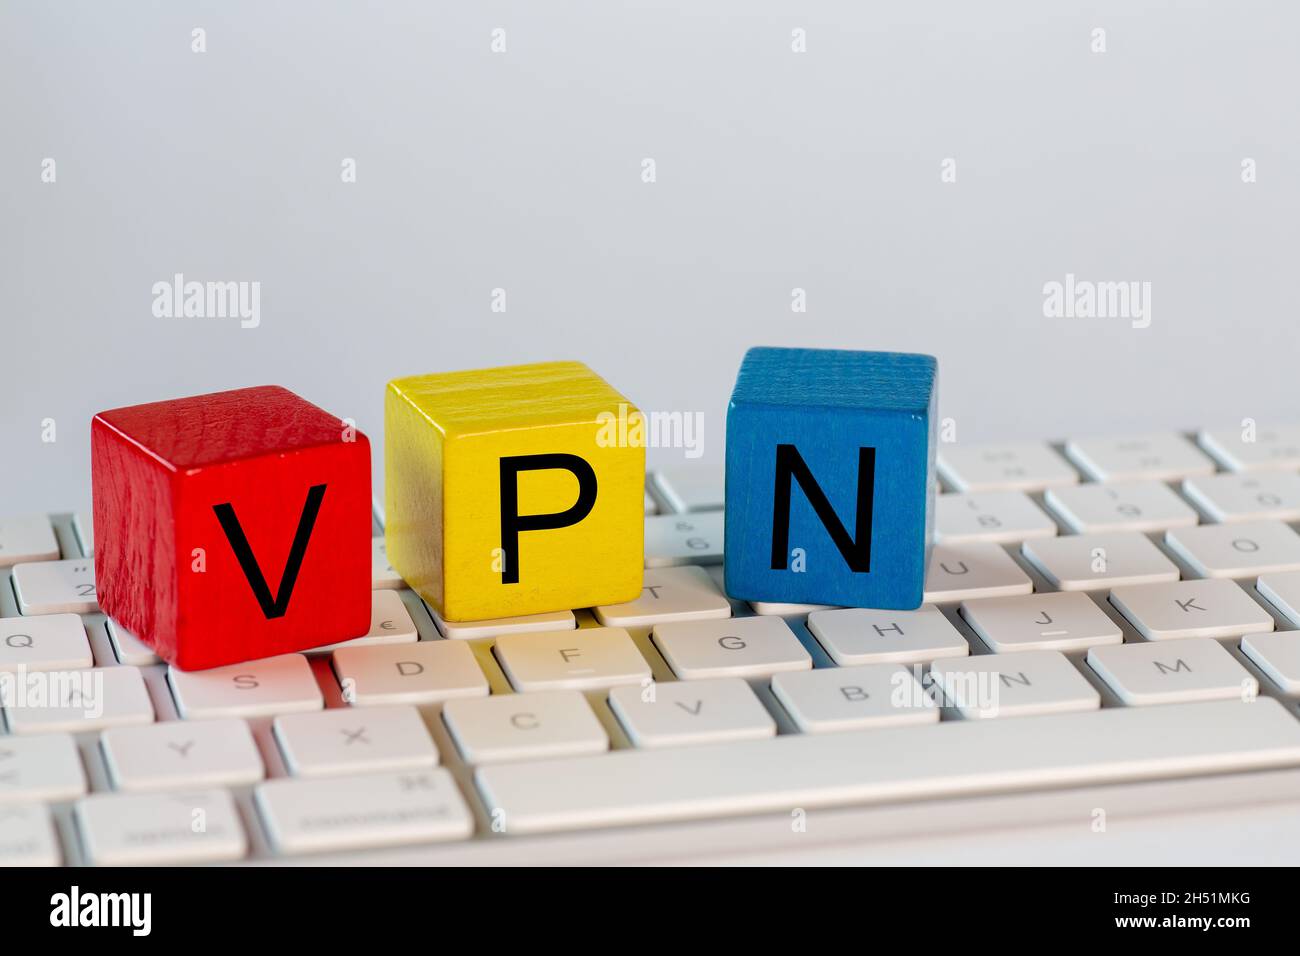 Blocchi colorati con le lettere VPN che stanno per rete privata virtuale. I blocchi sono su una tastiera luminosa del computer e isolati con bac bianco Foto Stock